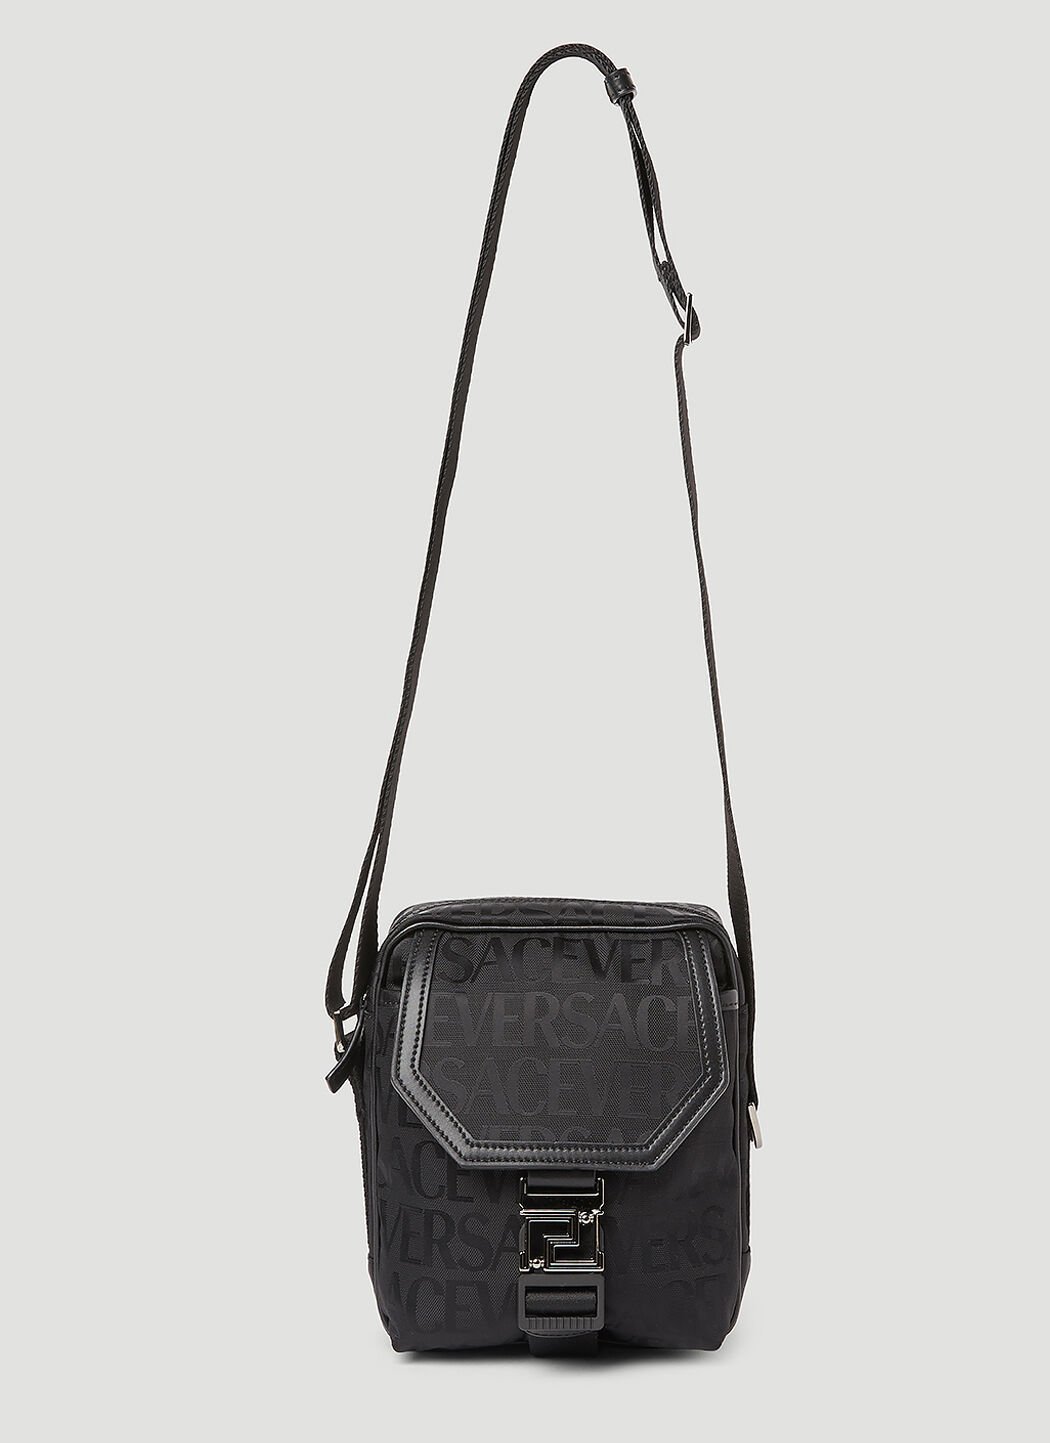 Versace Logo Jacquard Crossbody Bag Black ver0153045